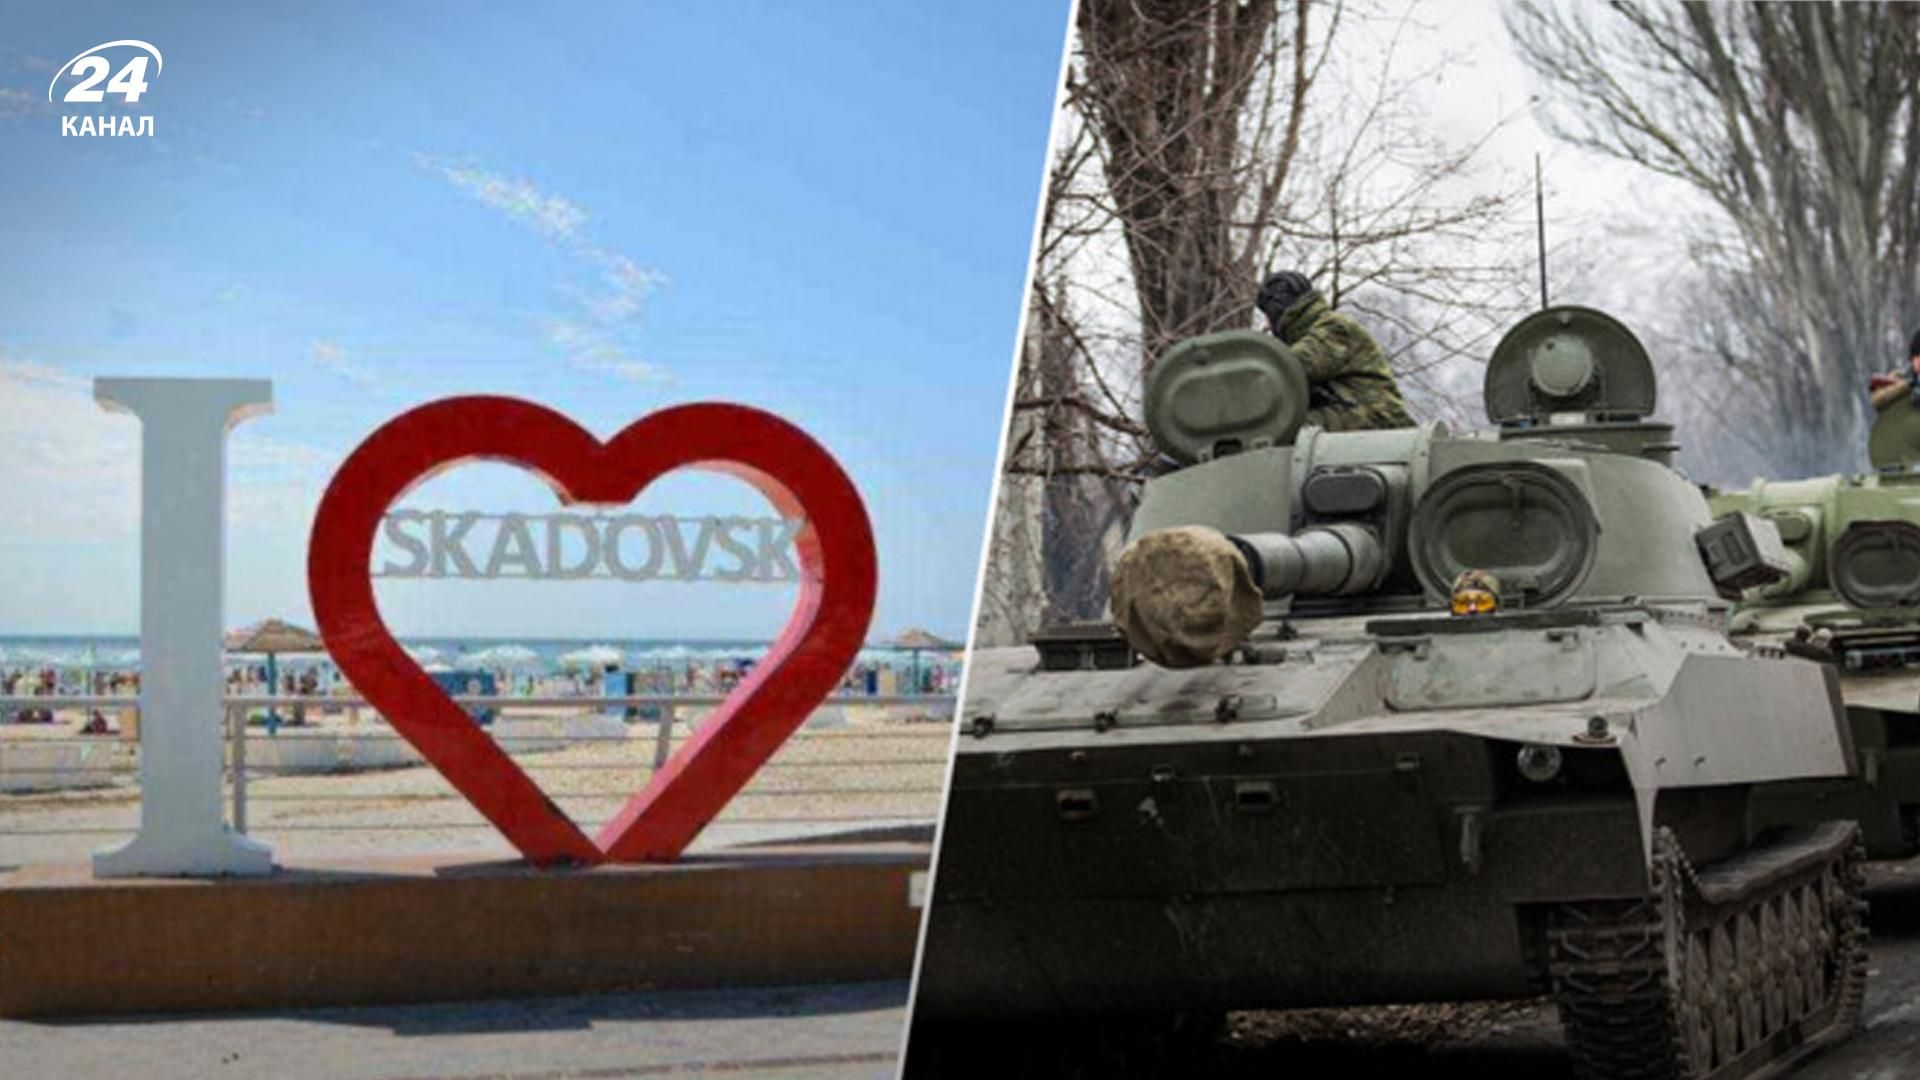 Какая ситуация в оккупированном Скадовске - люди хотят поехать, чтобы учиться на украинском - 24 Канал